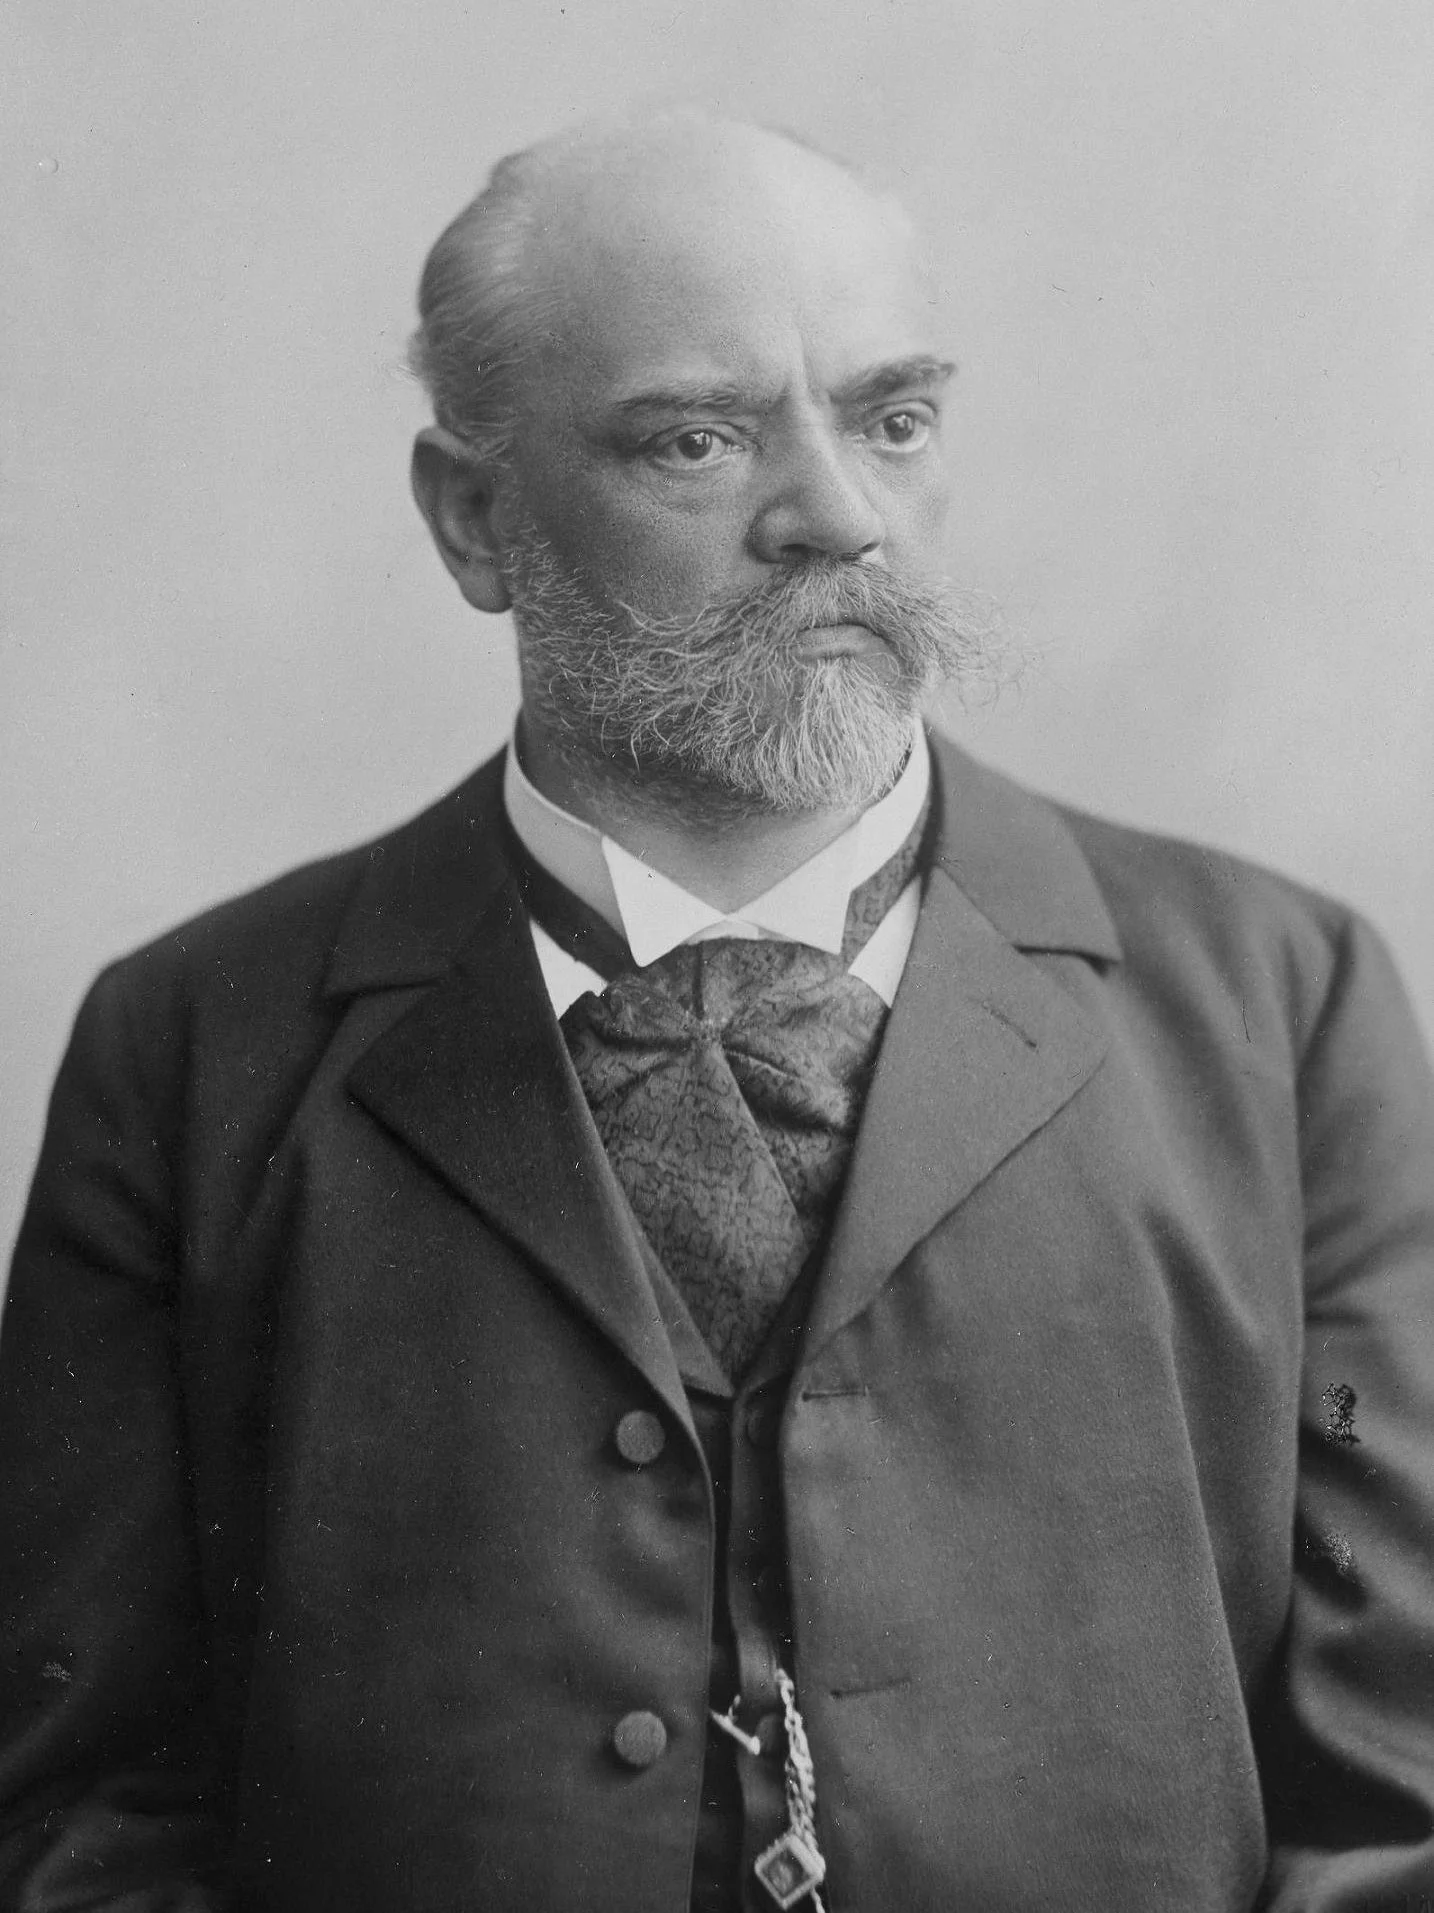 Porträt-Foto in schwarz-weiß von Antonín Dvořák.